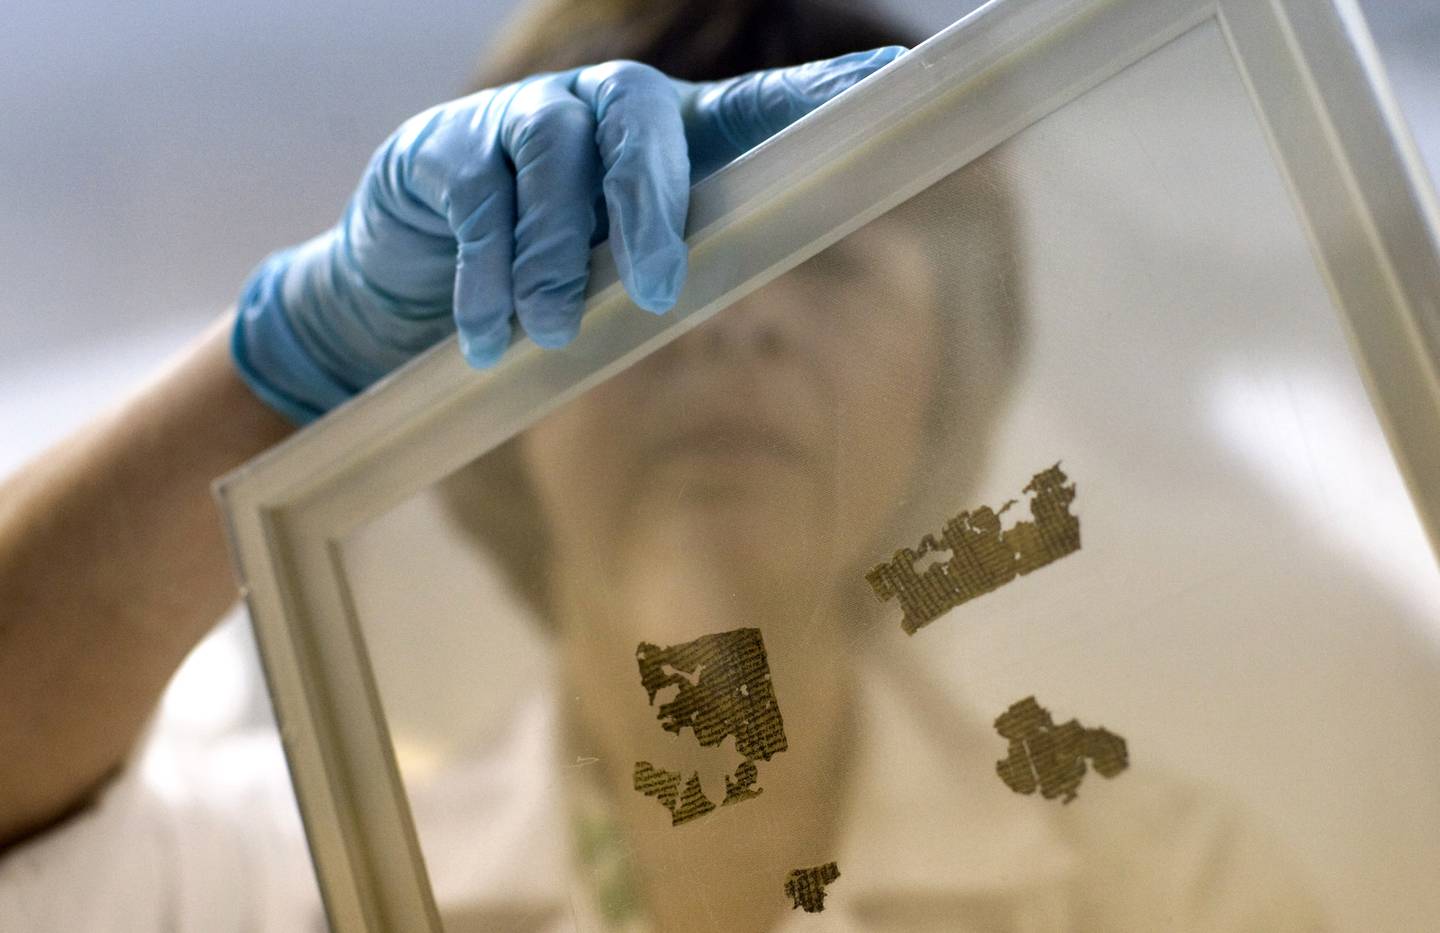 OPPBEVARING: Fragmenter av Dødehavsrullene oppbevares ofte på glassplater som dette. Her viser forsker Lena Libman fram noen små fragmenter fra et annet manuskript som også skal være nedtegning av bøker fra Det gamle testamentet.